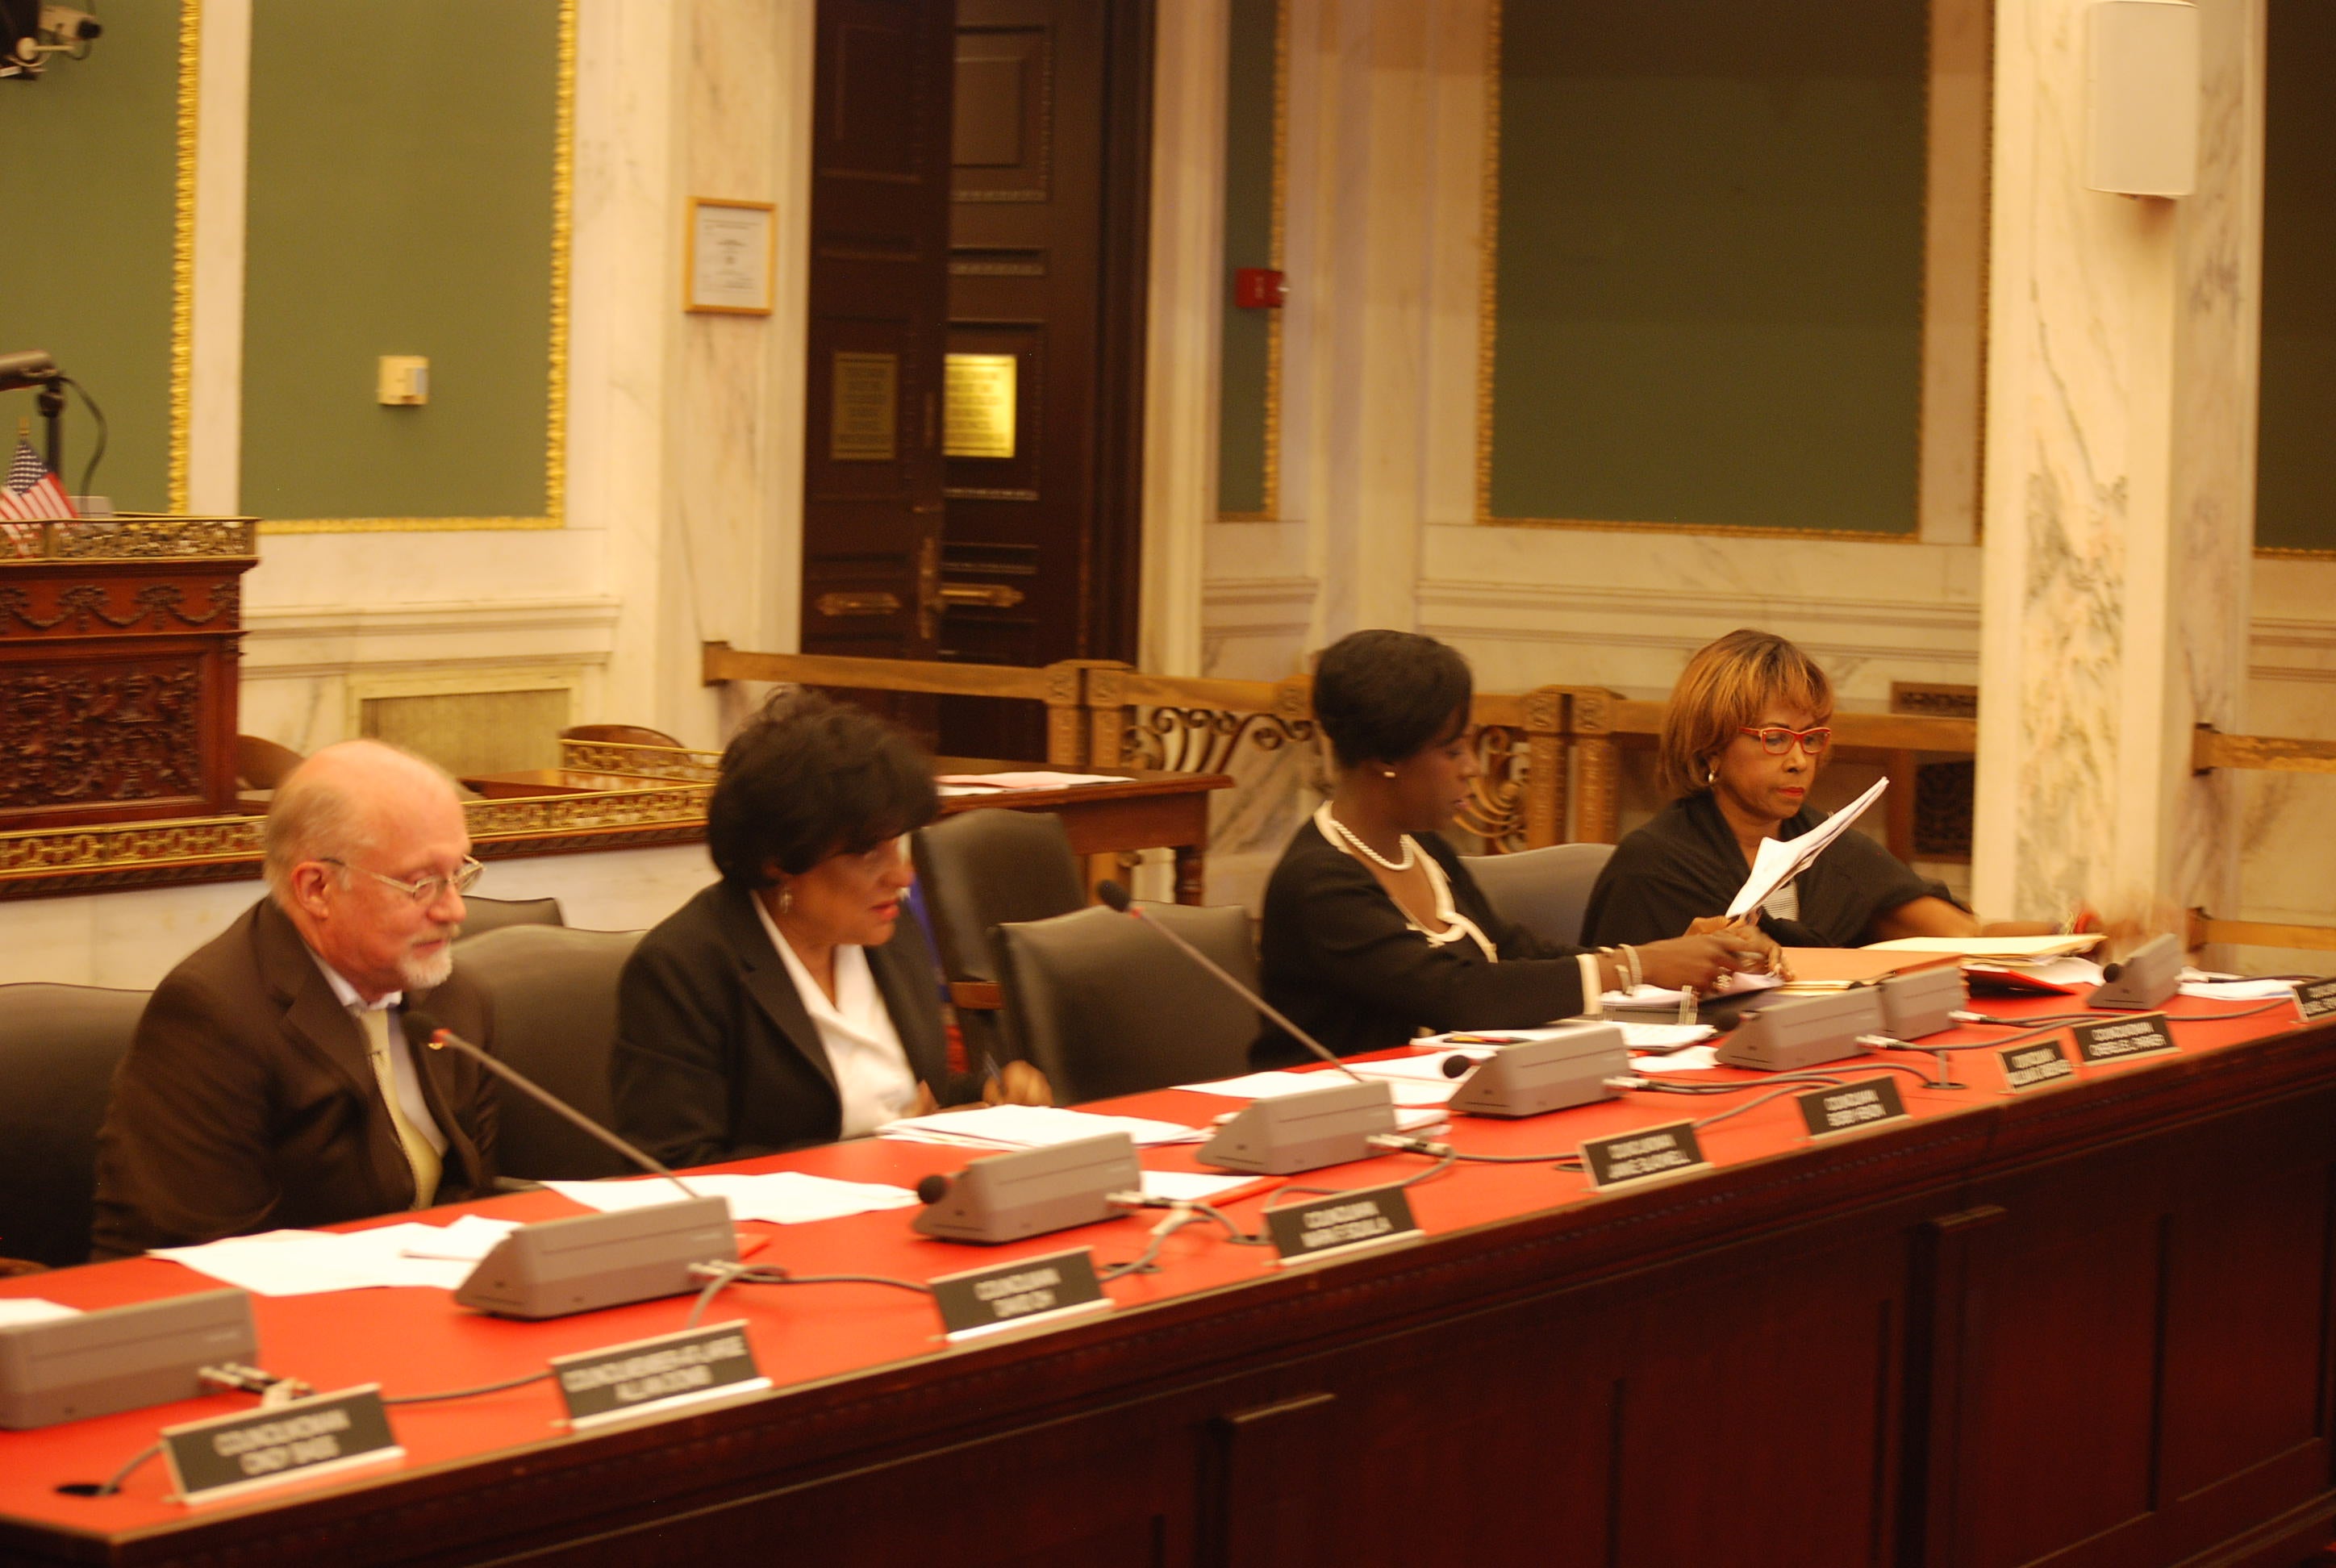 City Council members hear testimony on the KOZ bill. (Tom MacDonald/WHYY)